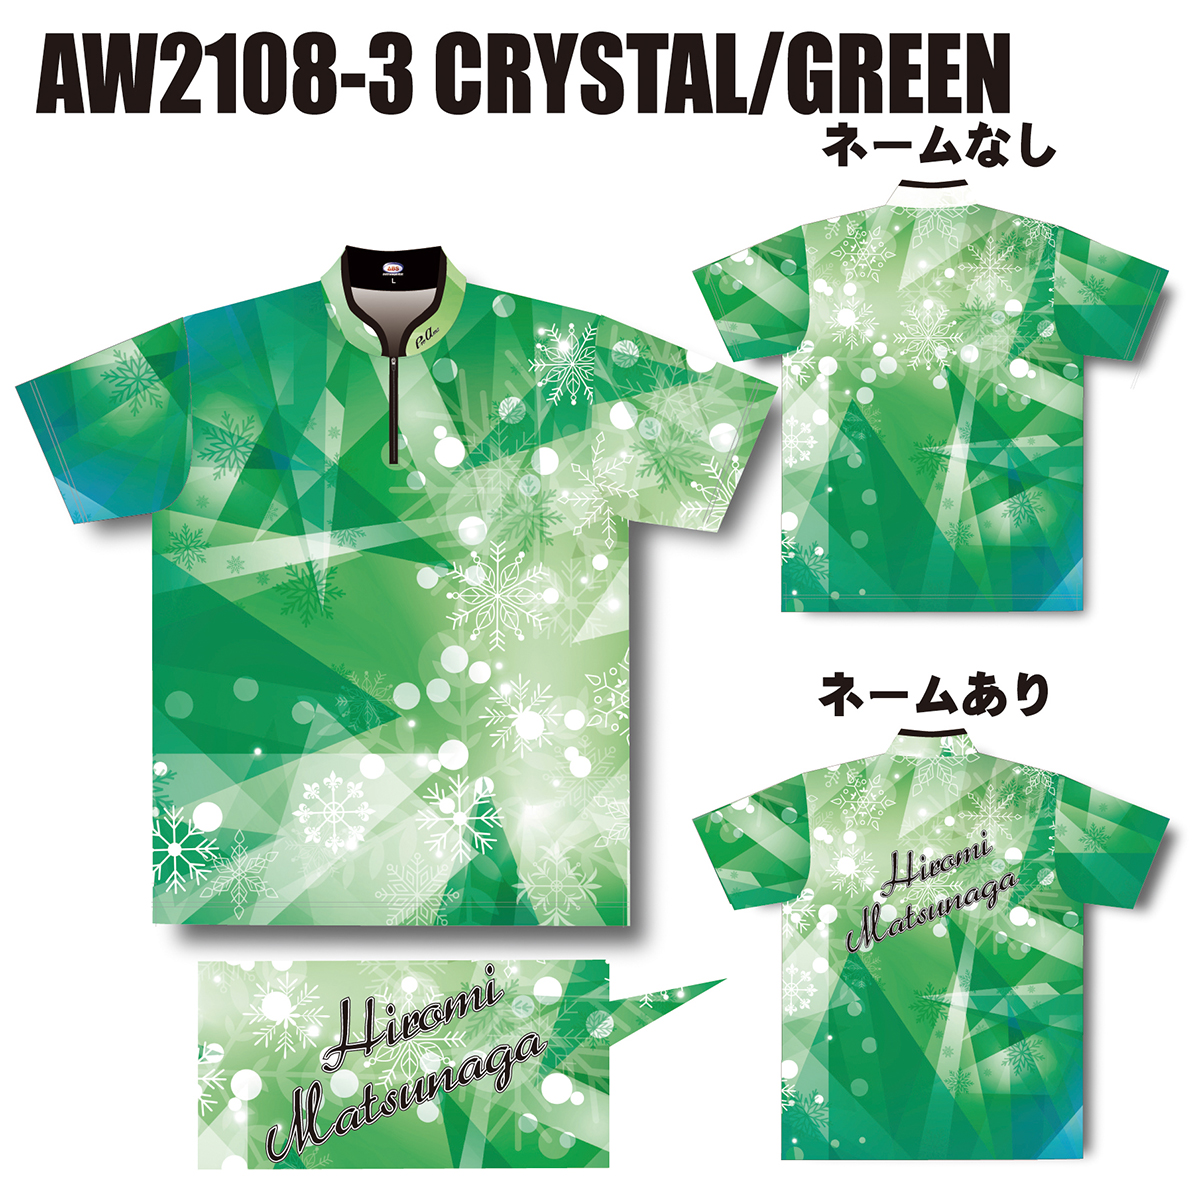 2021ウインターモデル(AW2108-3 CRYSTAL/GREEN)